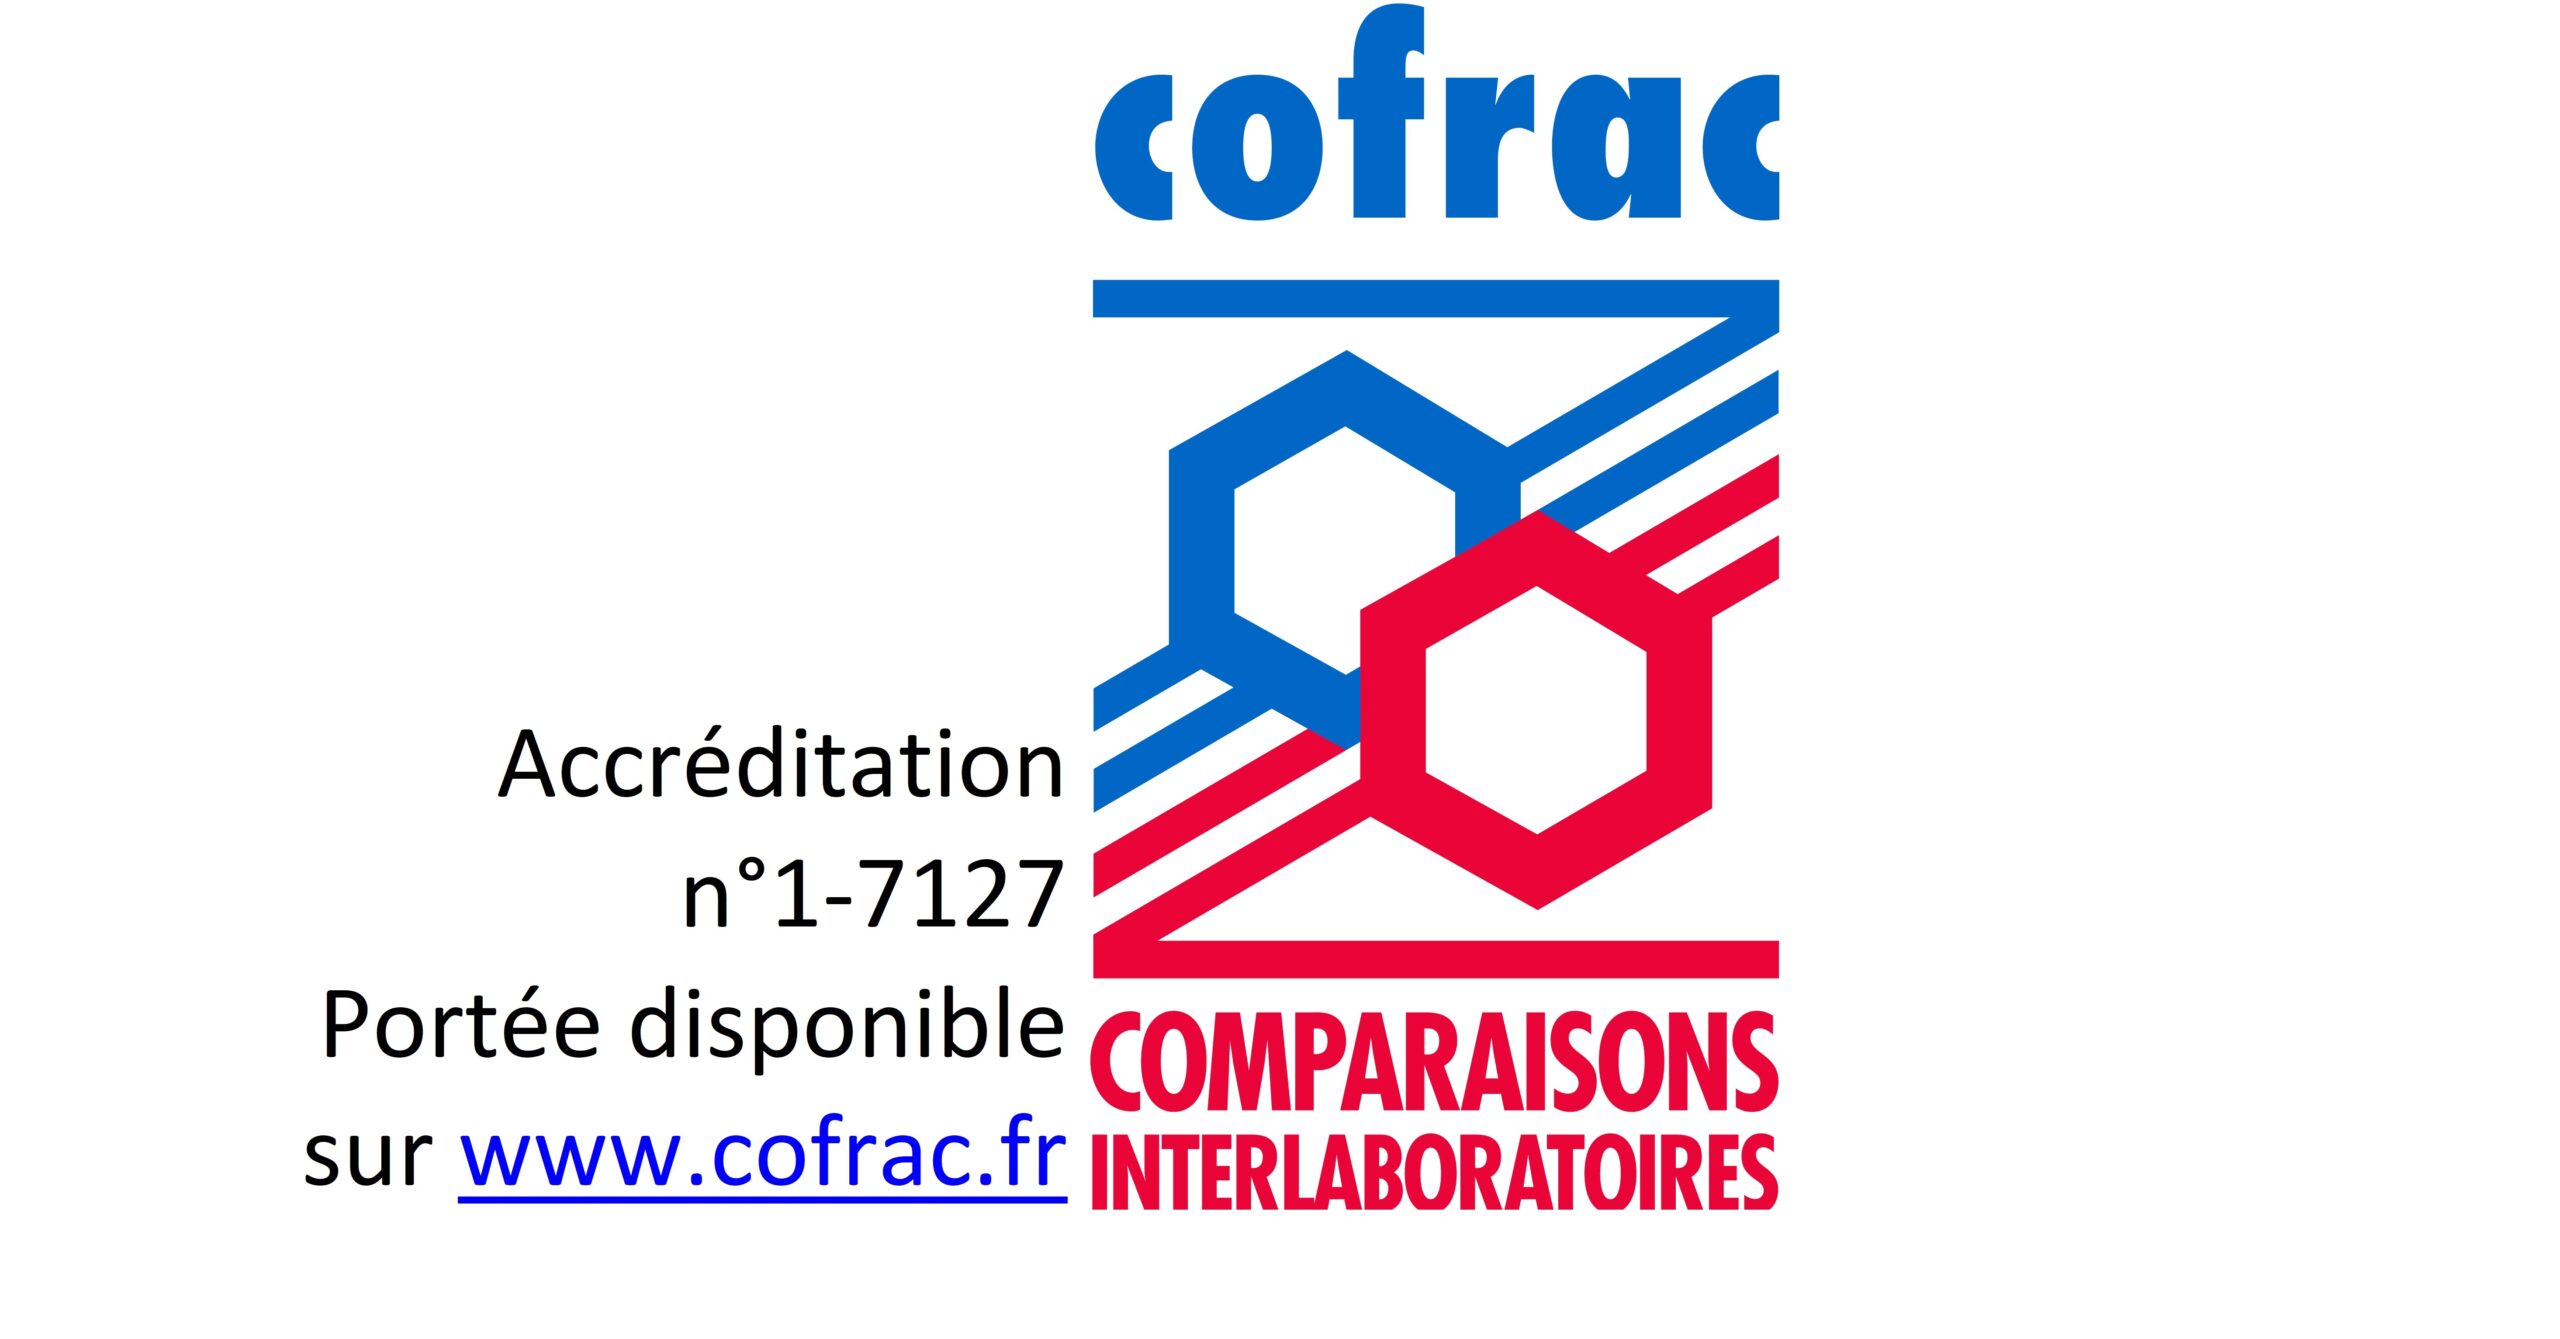 Le CT2M devient le premier organisateur de comparaisons inter-laboratoires (OCIL) accrédité COFRAC dans le domaine de l’étalonnage !